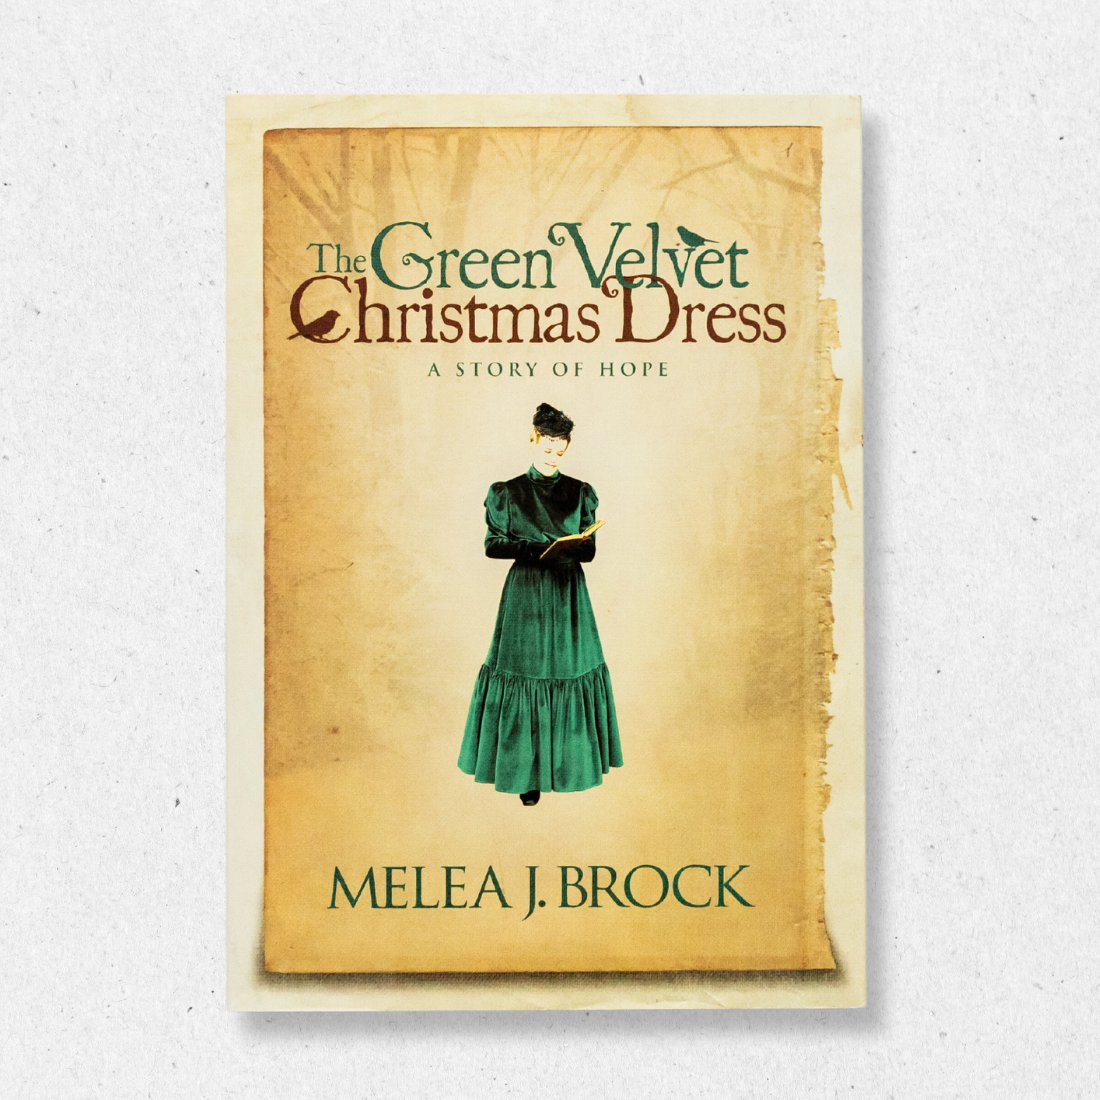 The Green Velvet Christmas Dress